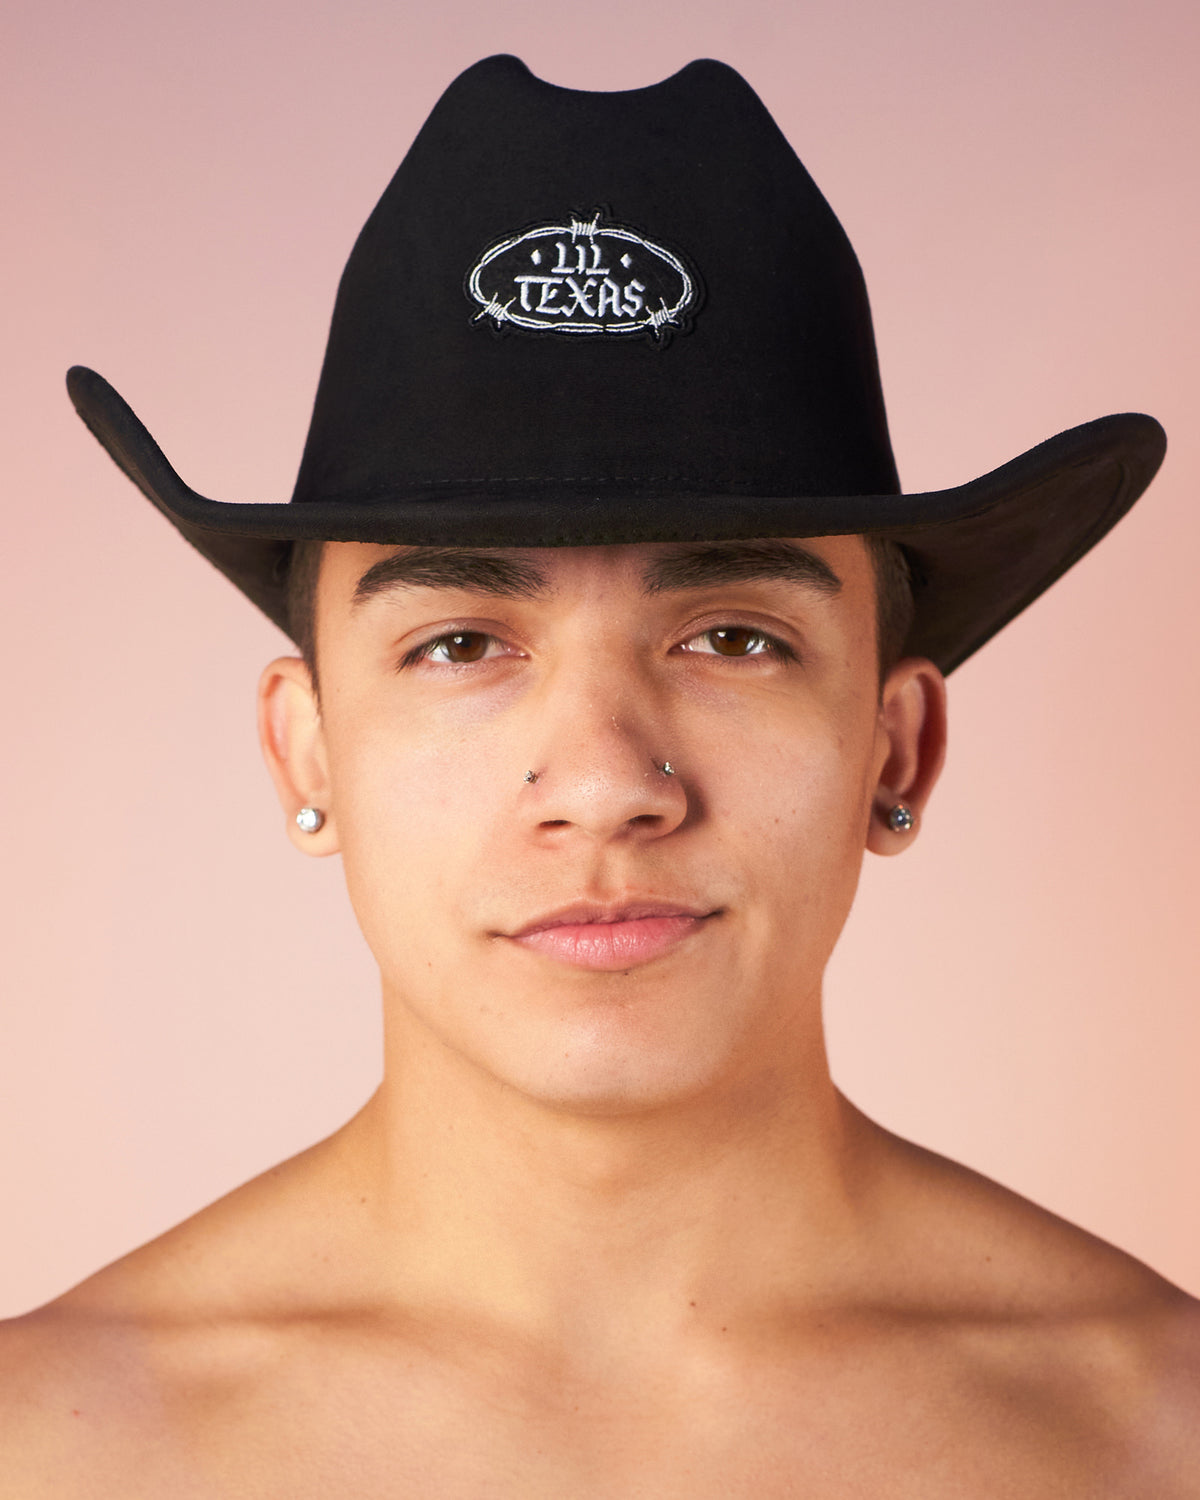 RW x Lil Texas Cowboy Hat